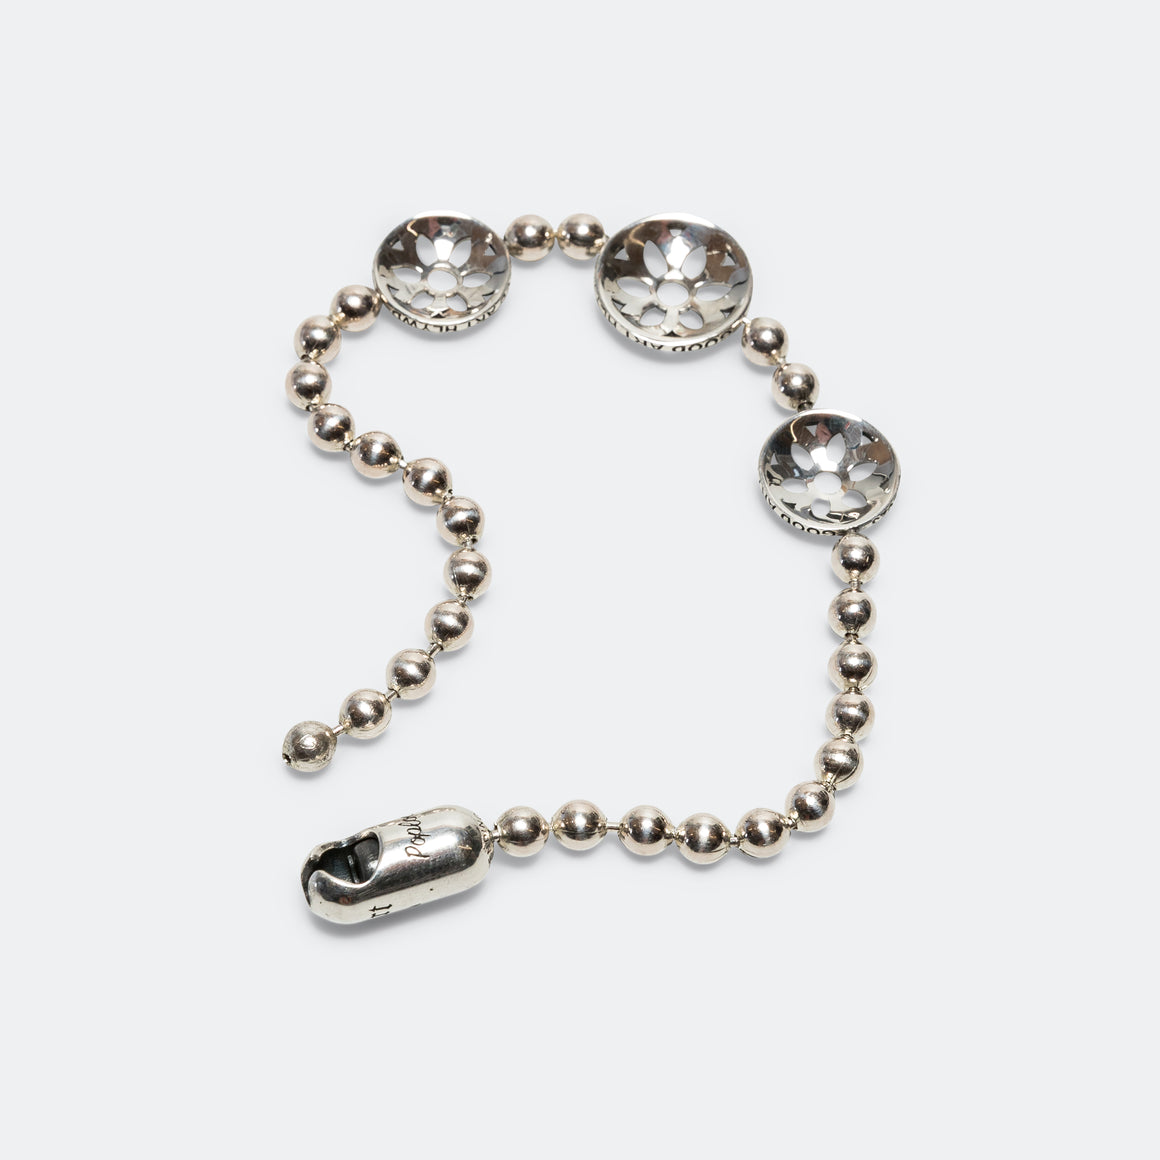 Poplock Ball Chain Bracelet w/ Rosette Discs - 925 Silver